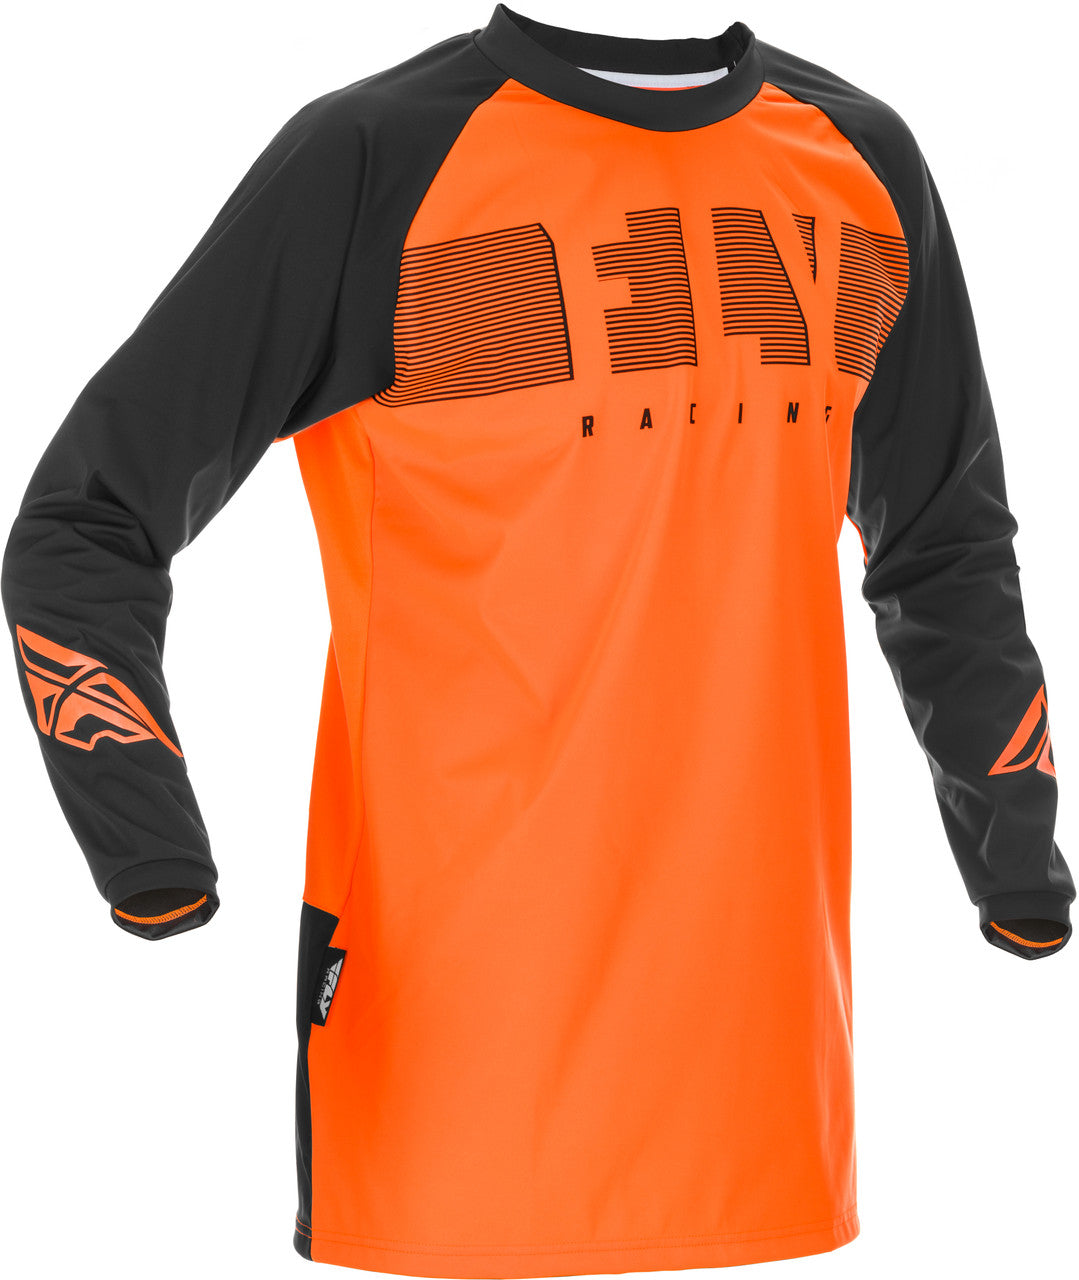 'Fly Racing' Men's Windproof Jersey - Orange / Black